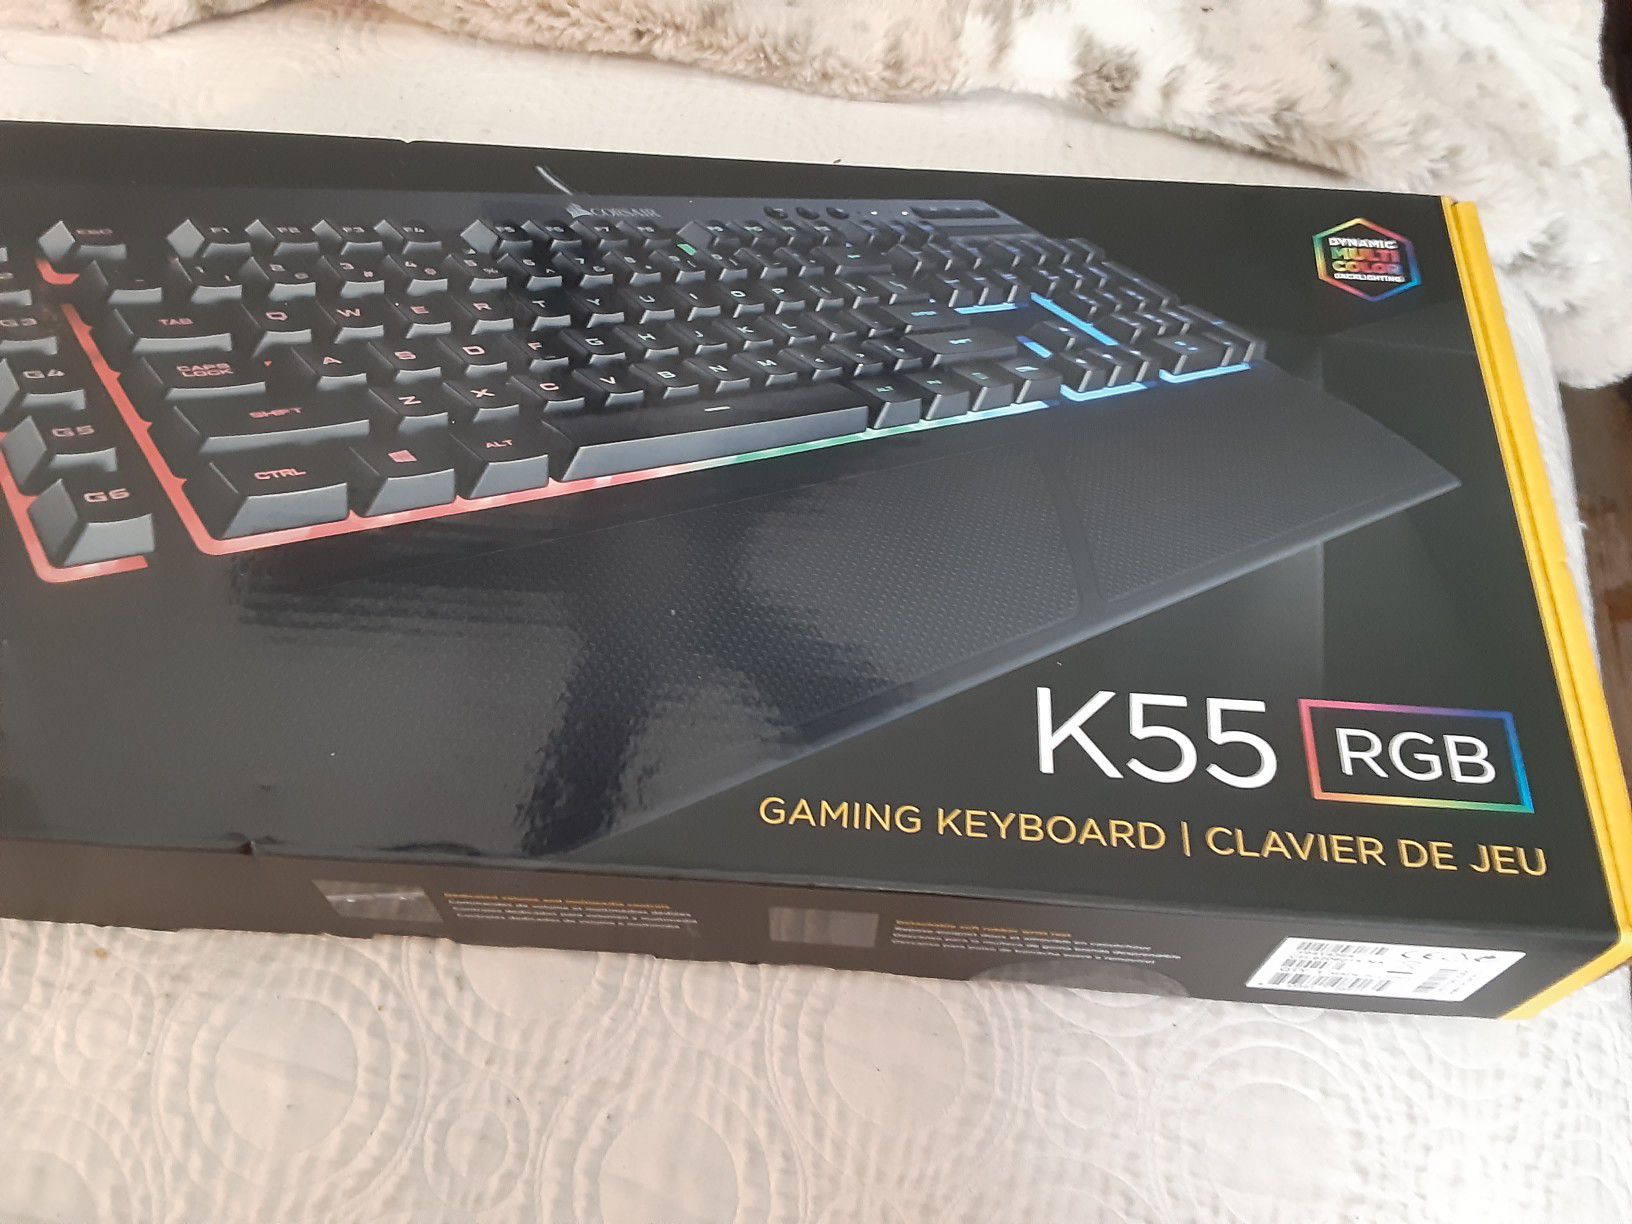 K55 gaming keyboard